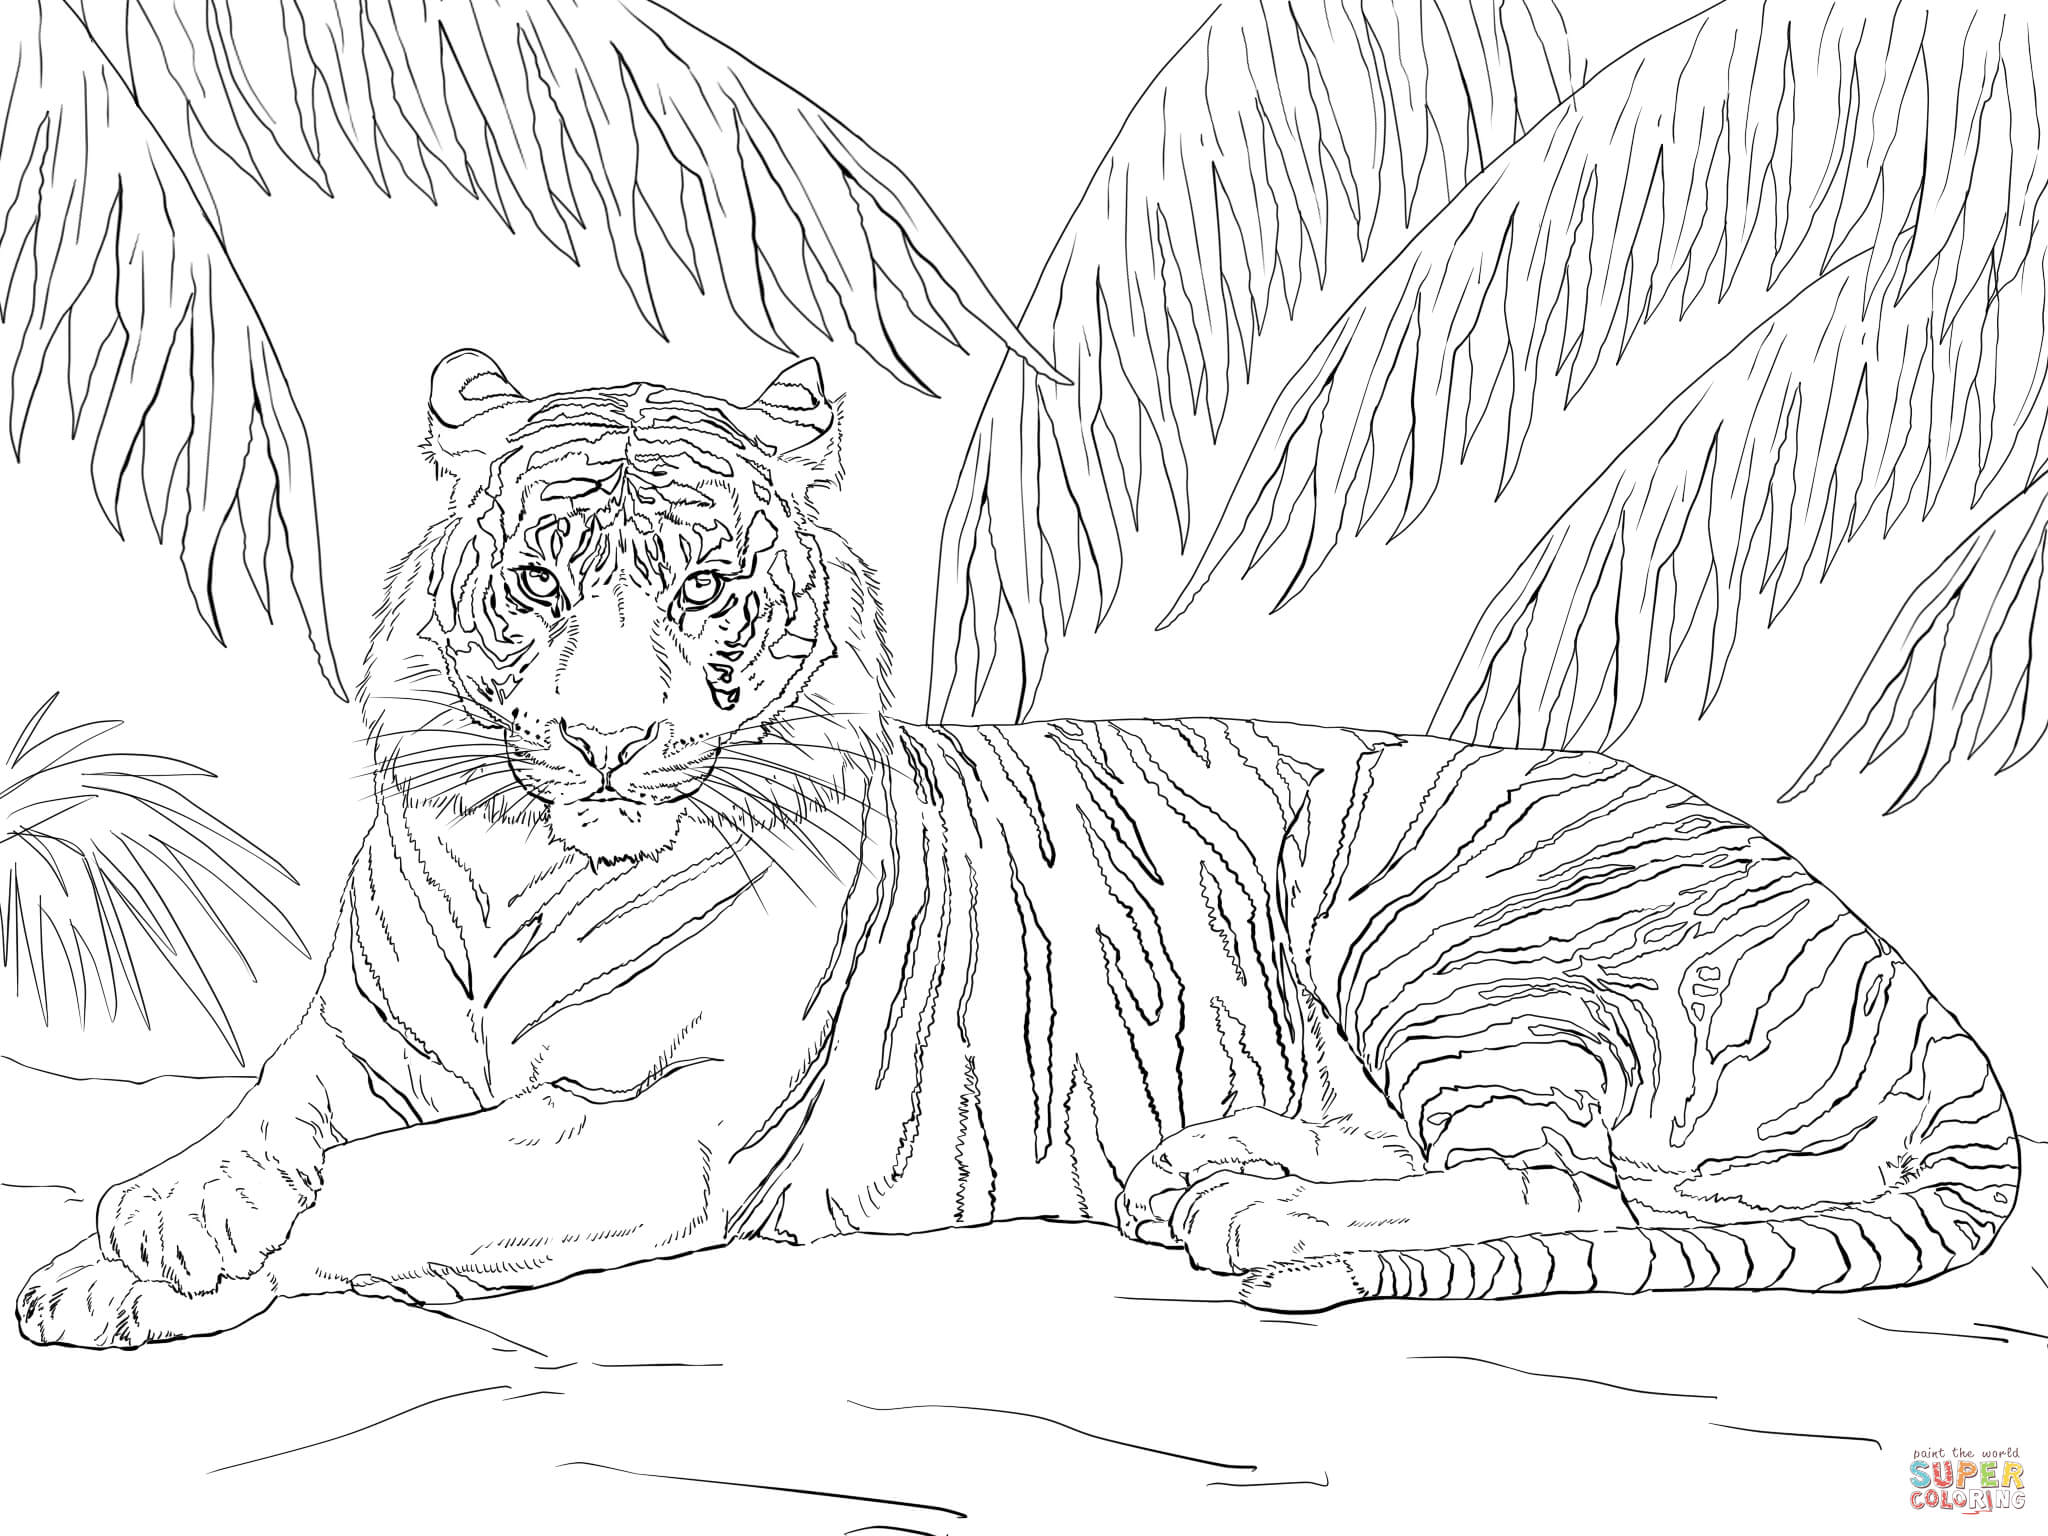 Hình ảnh màu của một vị vua của núi վ một con hổ đang nghỉ ngơi dưới gốc cây